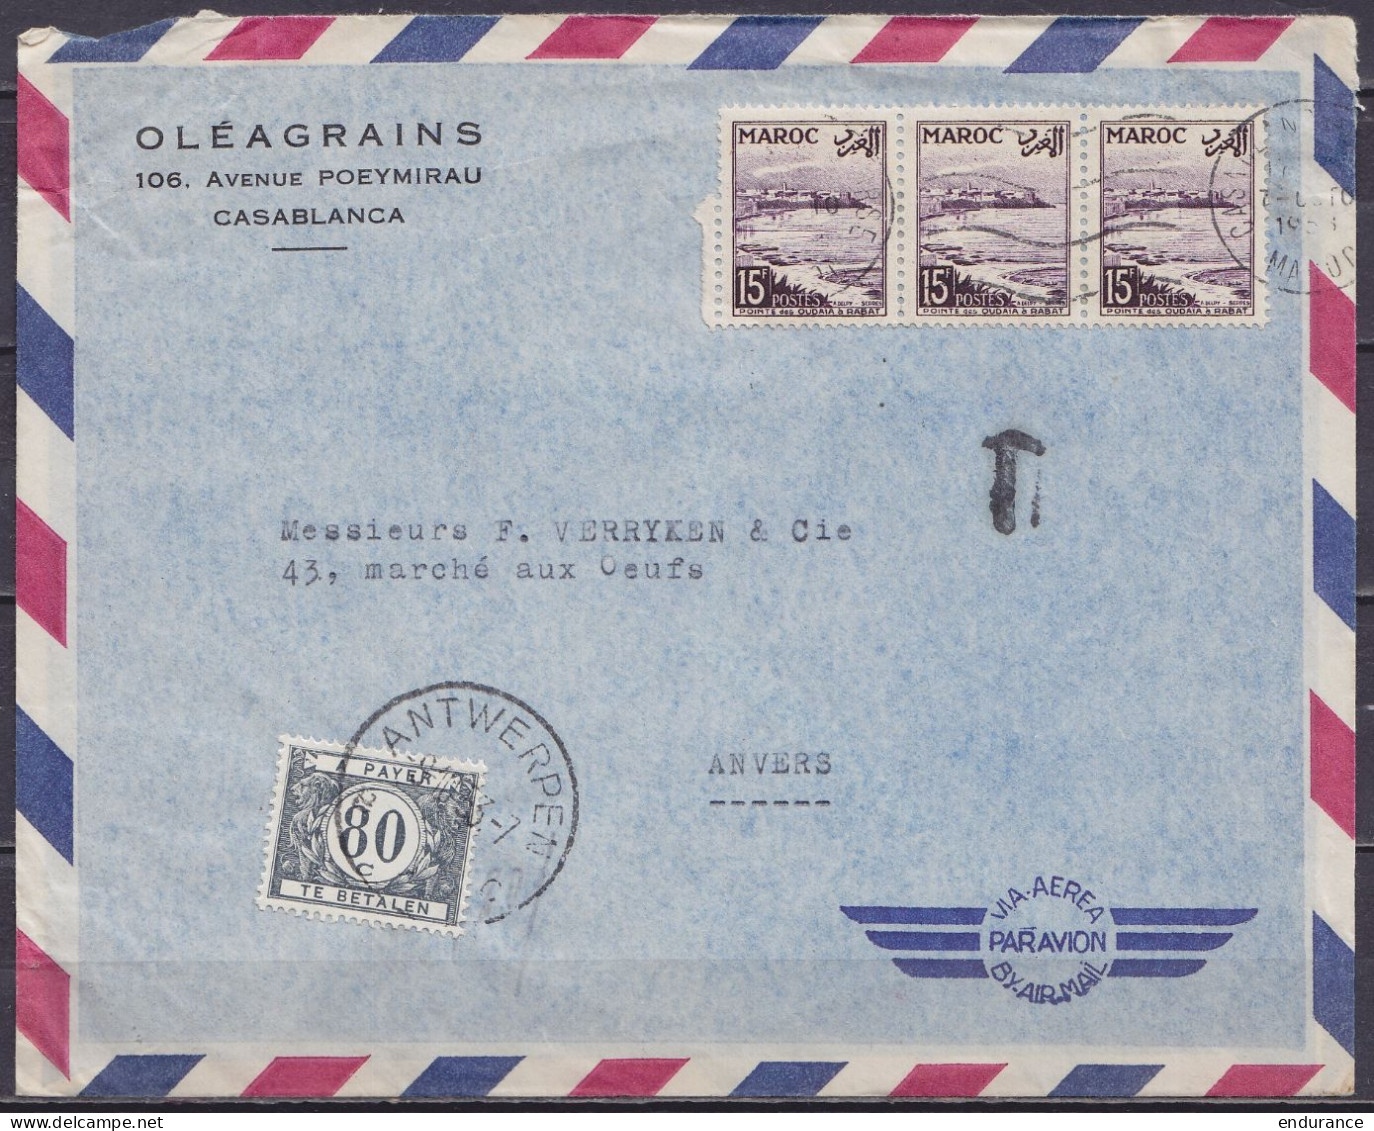 Maroc - Env. "Oléagrains" Par Avion Affr. 3x15f Flam. CASABLANCA /7 OCTO 1933 Pour ANVERS Taxée 80c Càd ANTWERPEN /9.10. - Lettres & Documents